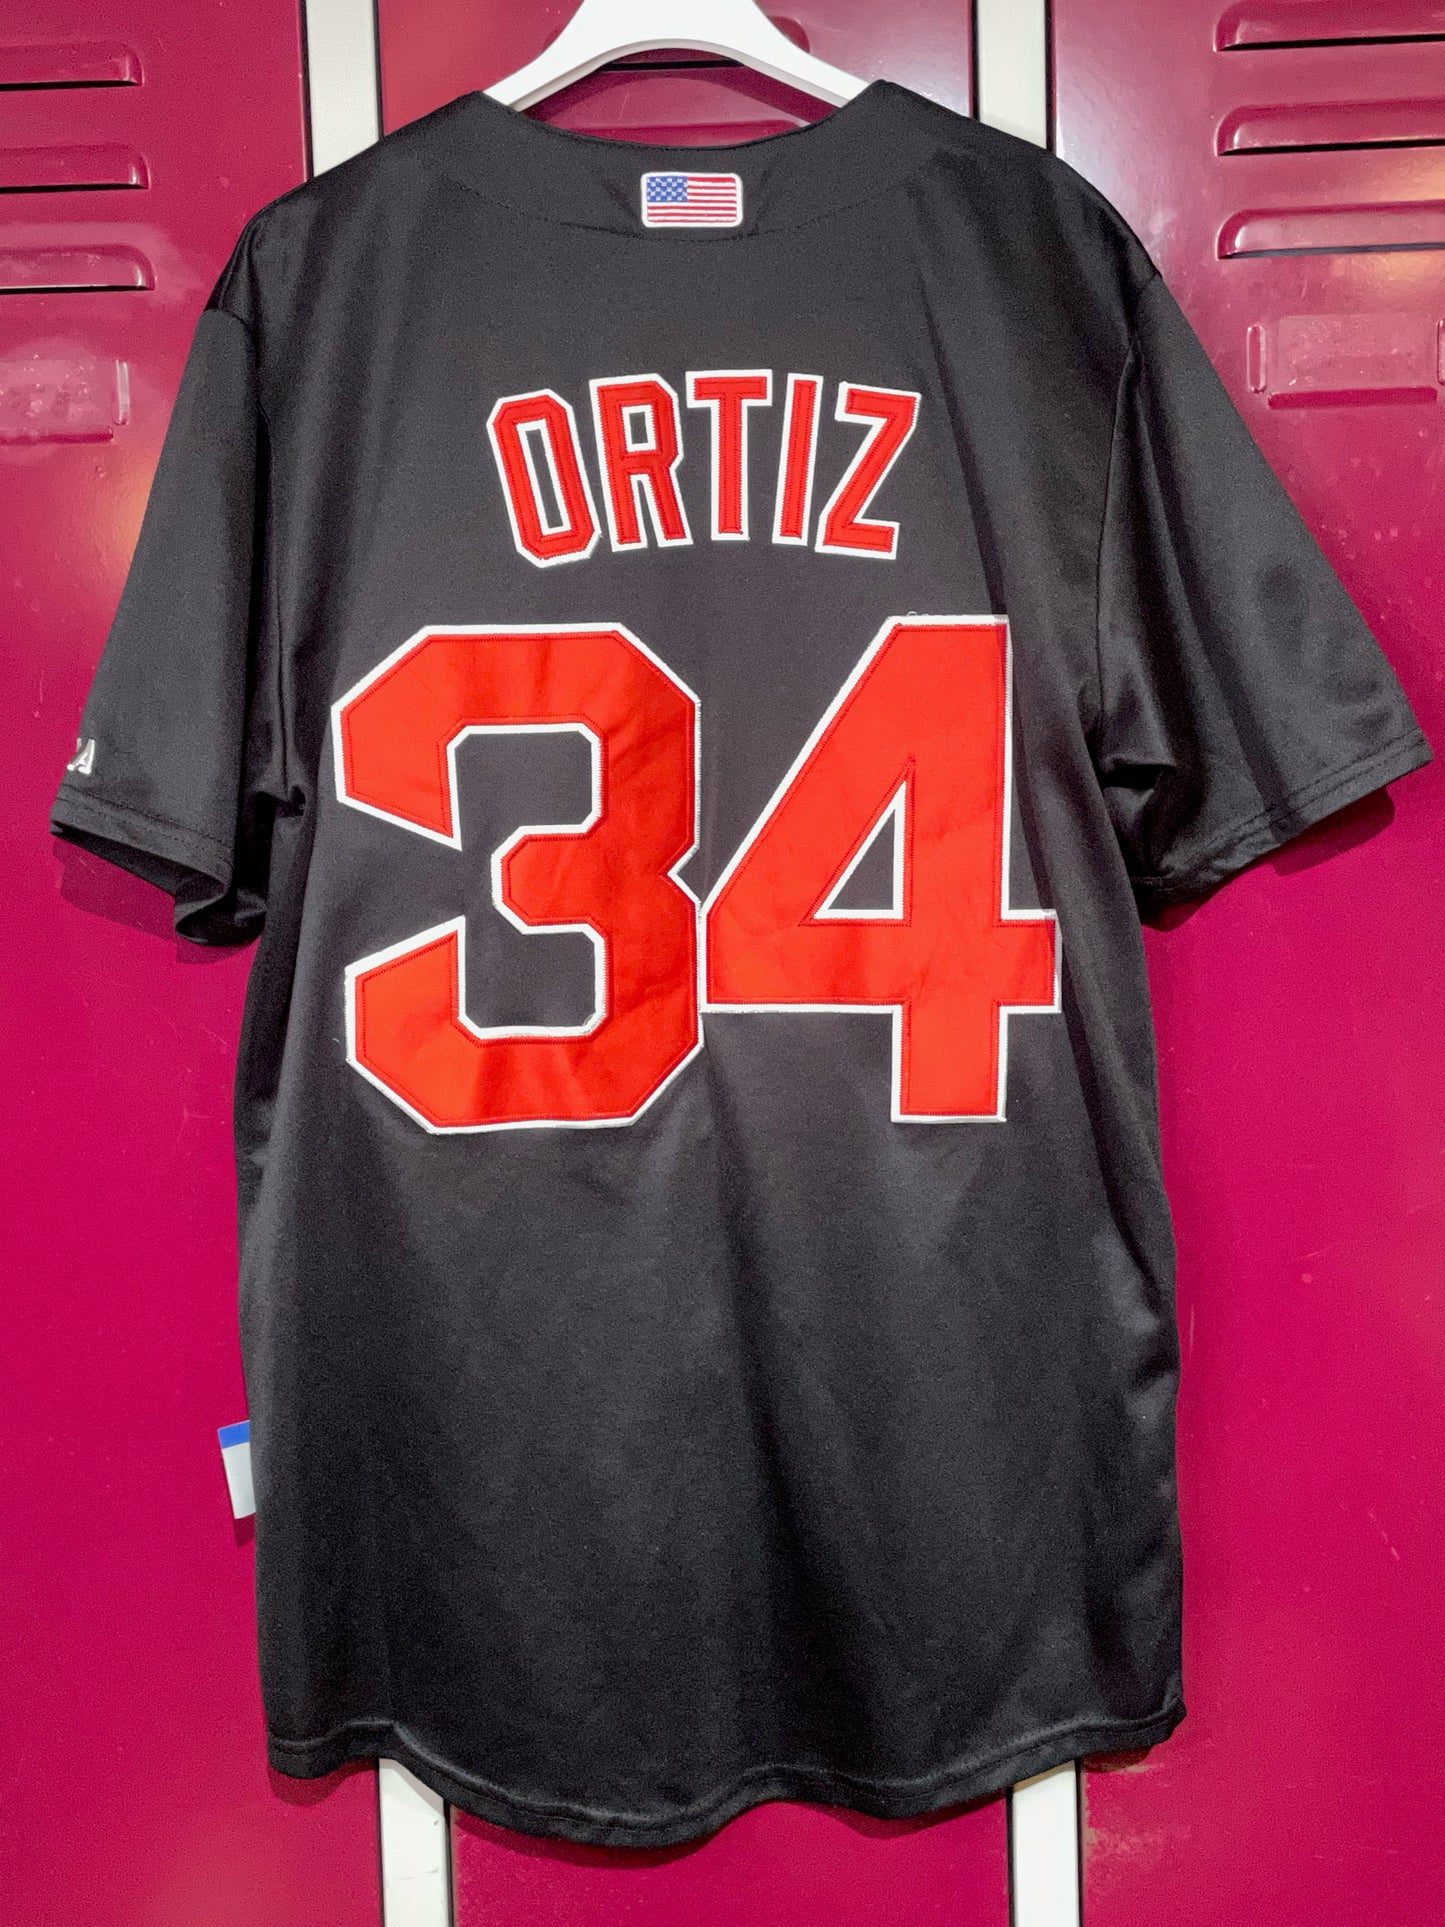 DRI BASE BOSTON RED SOX "DAVID ORTIZ" MLB BASEBALL JERSEY  SZ: M